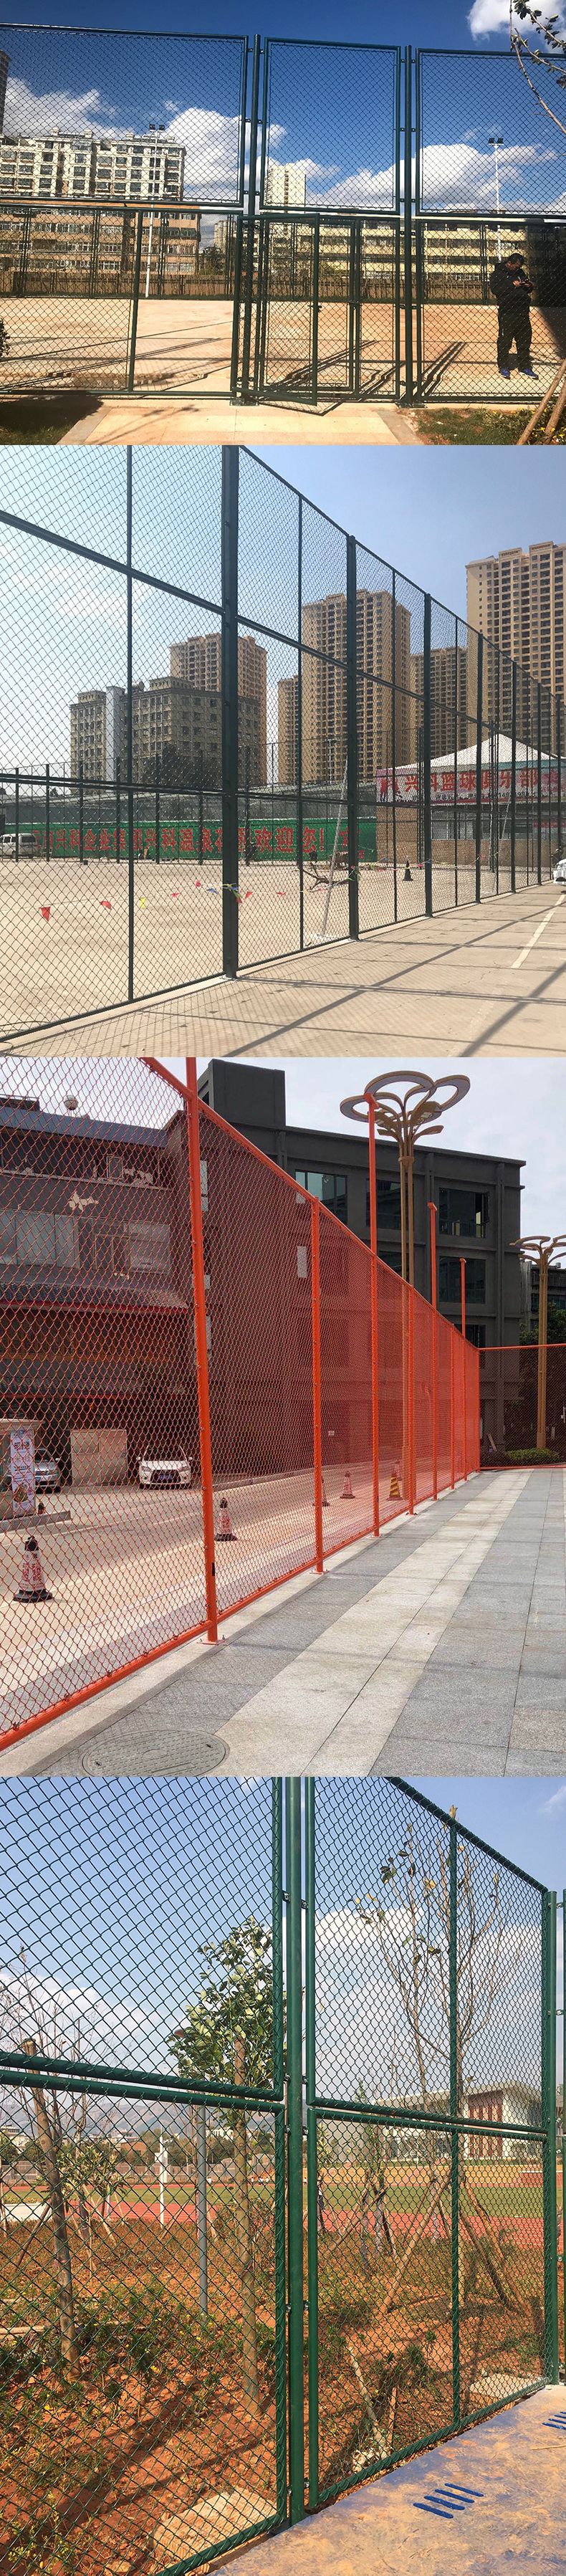 北京体育场铁丝网上，也可用做篮球场围网，排球场围网